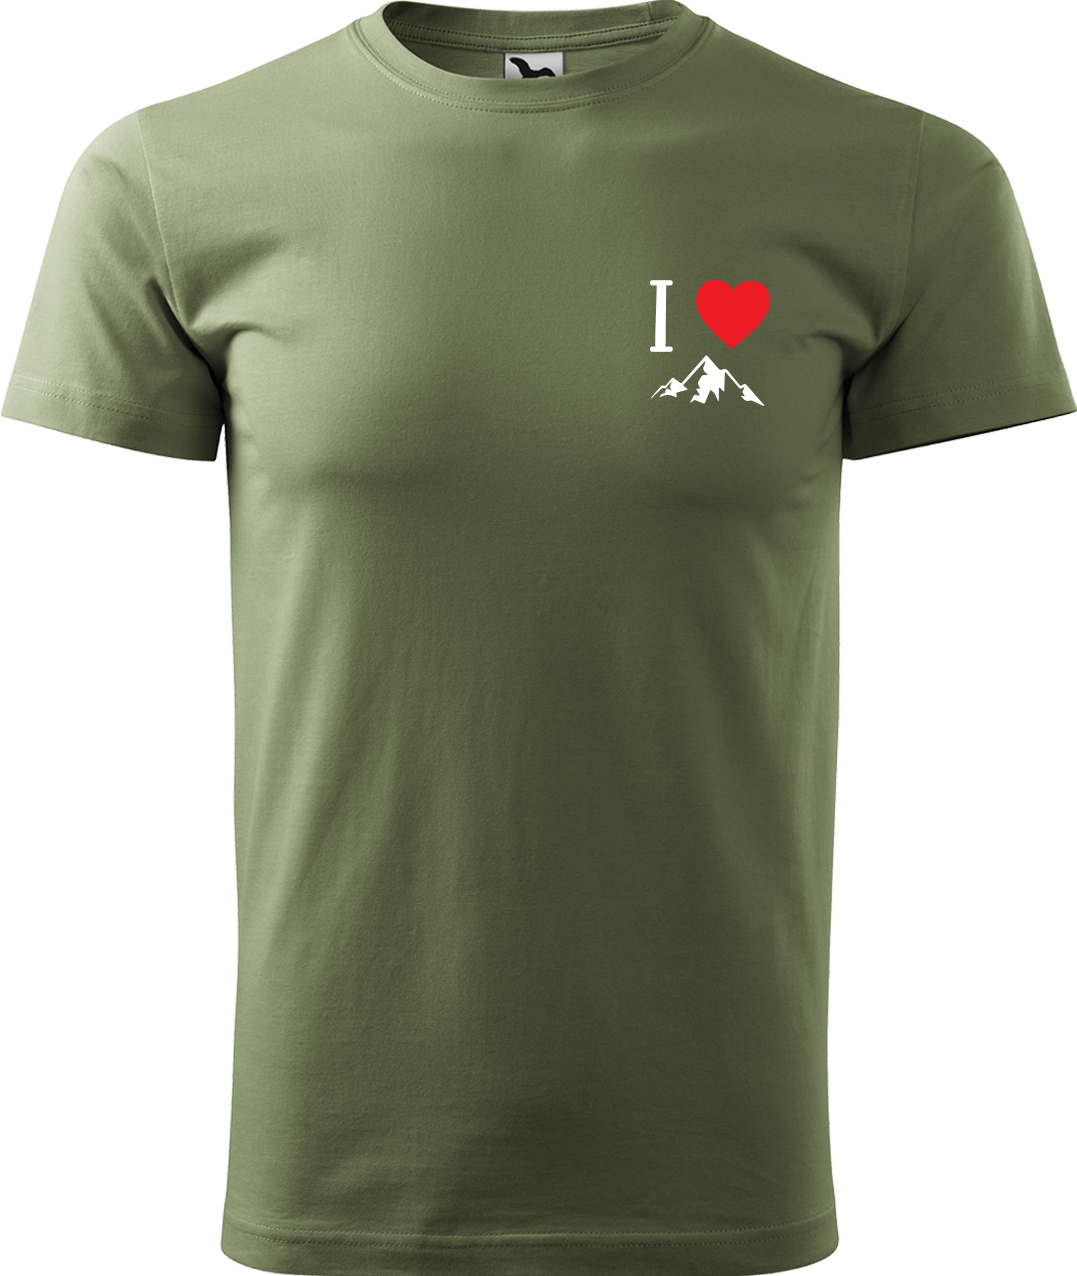 Pánské tričko na hory - I love mountain Velikost: L, Barva: Světlá khaki (28), Střih: pánský